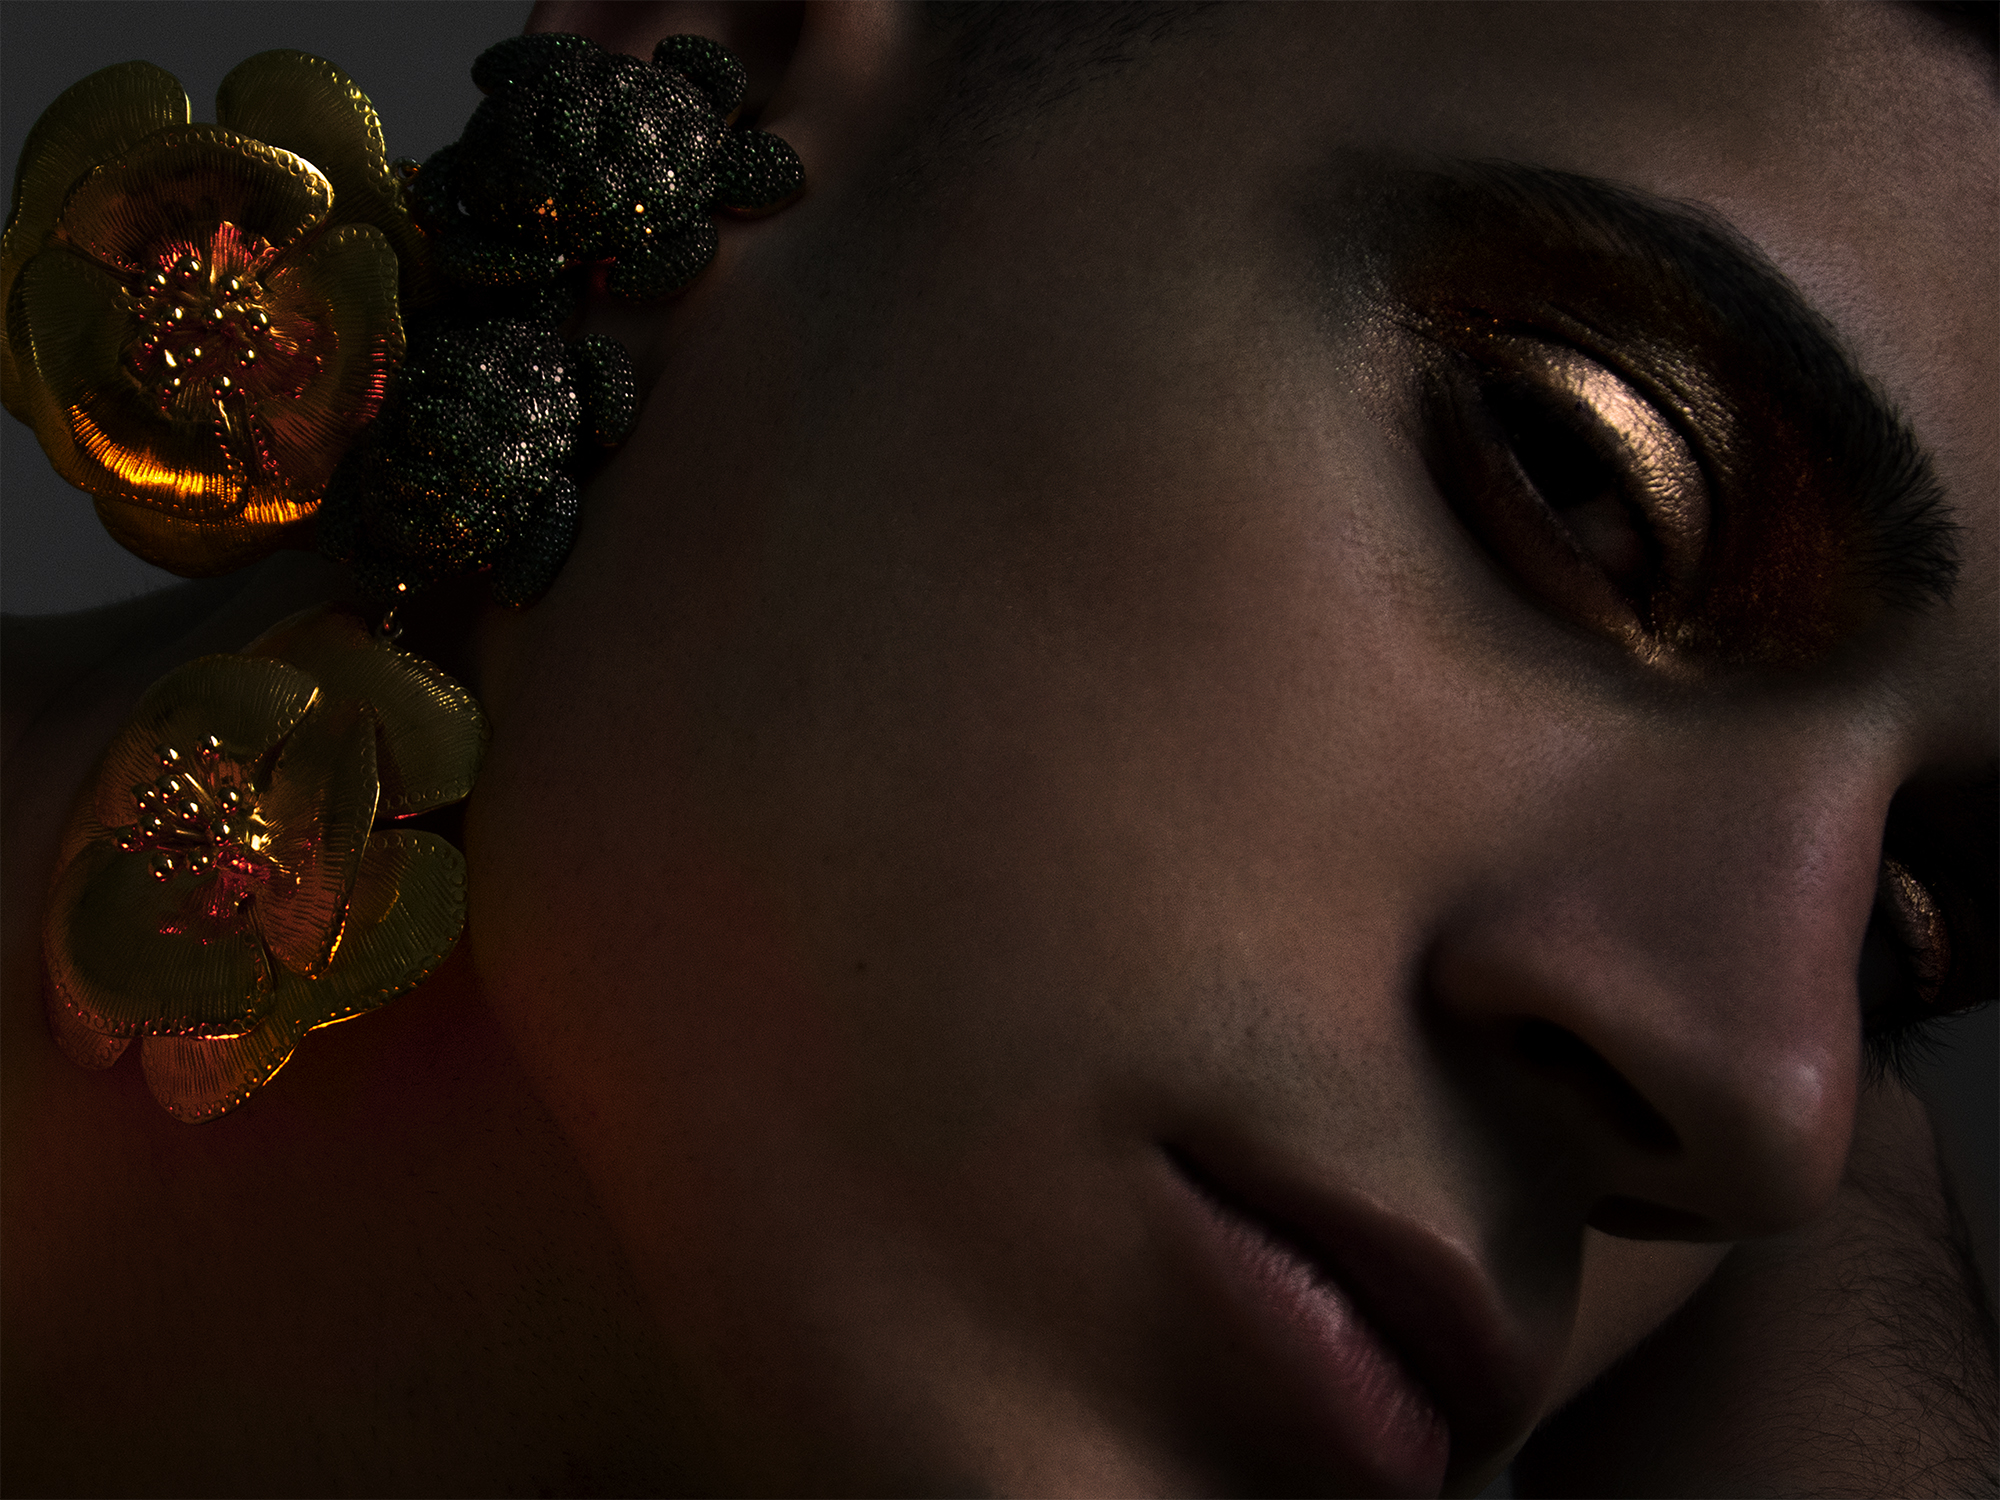 Bijoux Begüm Khan. Model Rowaan @gdfkparis. Makeup by Chanel. PHoto ©Buonomo & Cometti